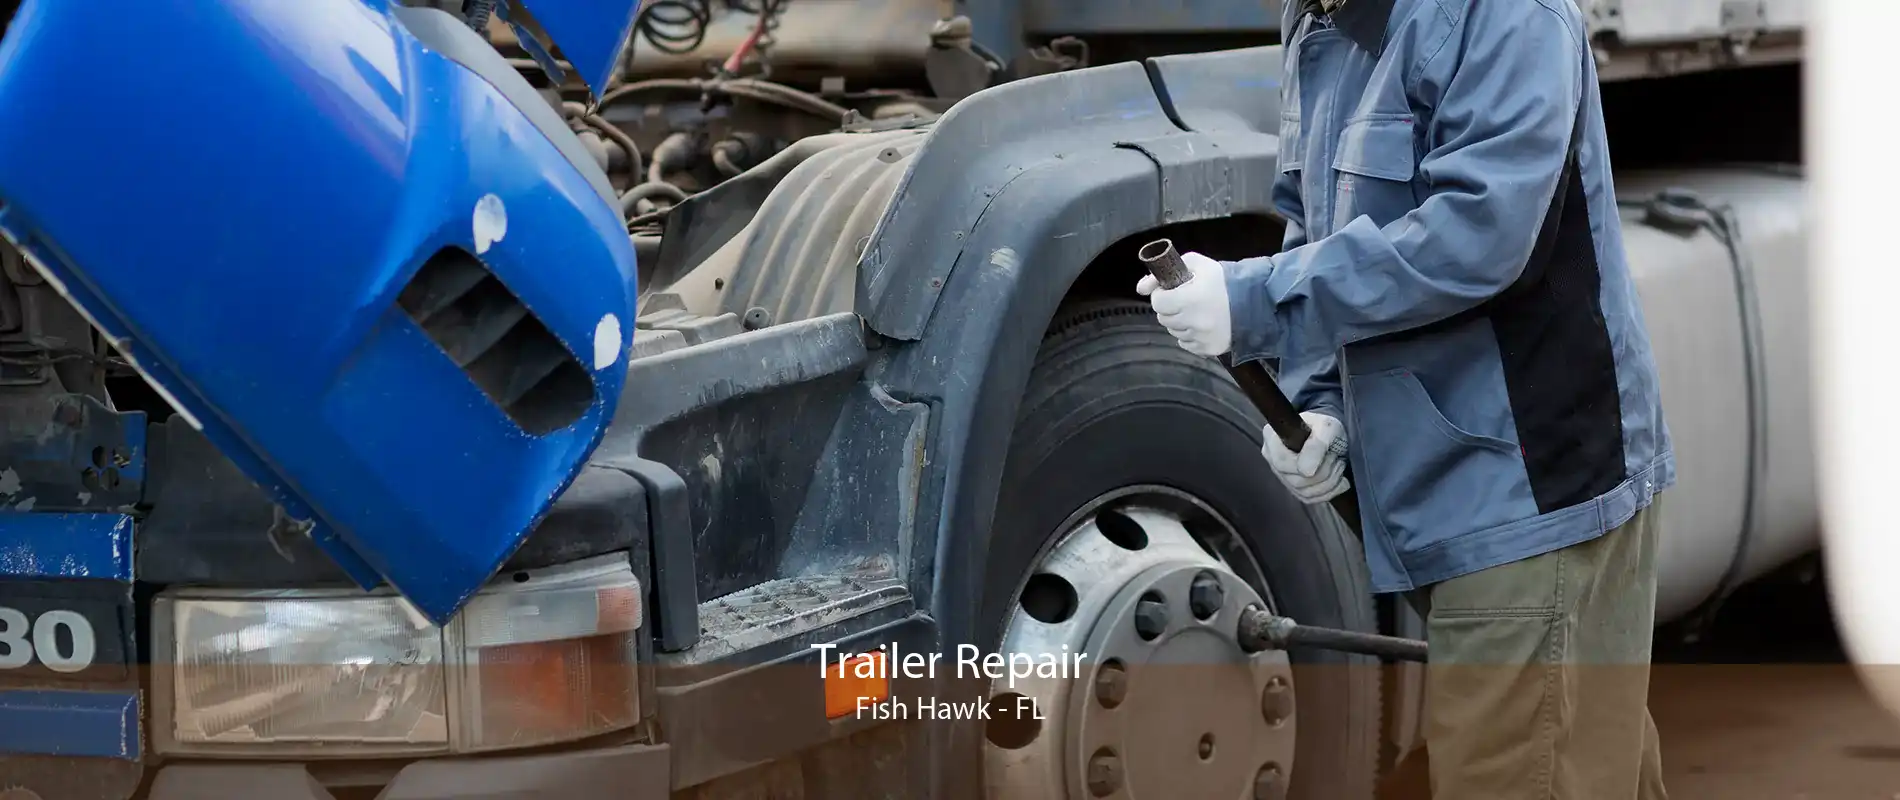 Trailer Repair Fish Hawk - FL